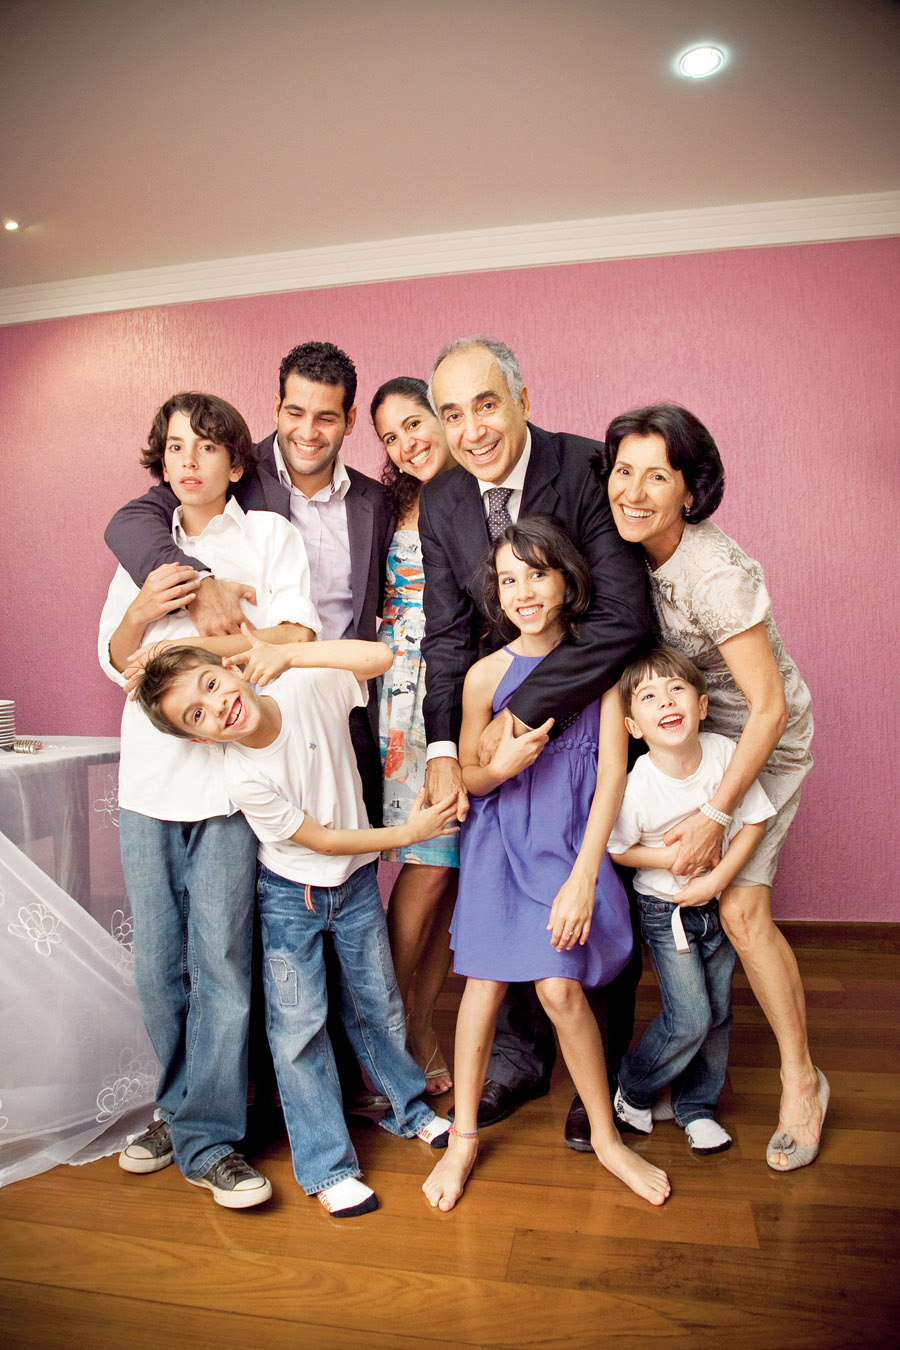 No casamento, com João, os dois filhos dele (atrás) e os quatro filhos dela (na frente)